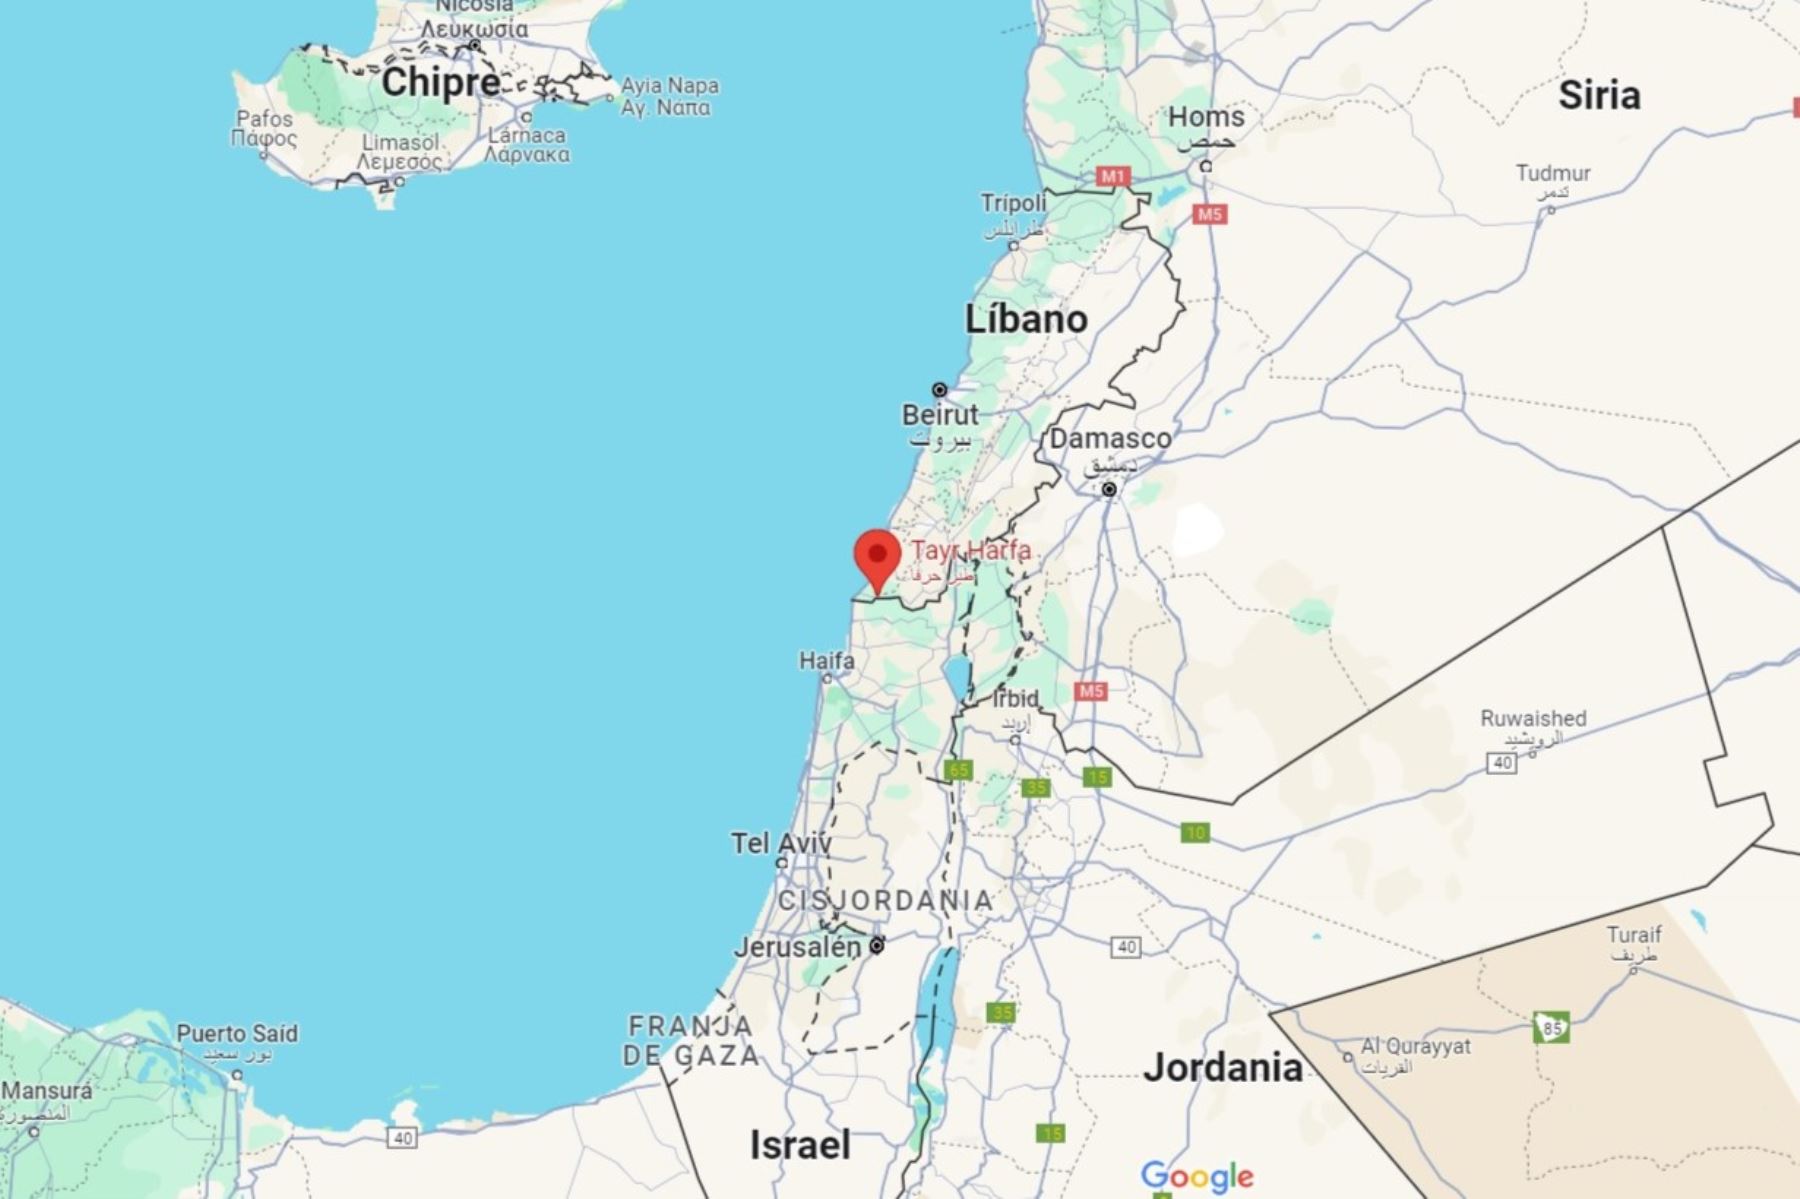 Mapa de ubicación de Tair Harfa, en el sur del Líbano, zona bombardeada por Israel. Imagen: Google Maps.